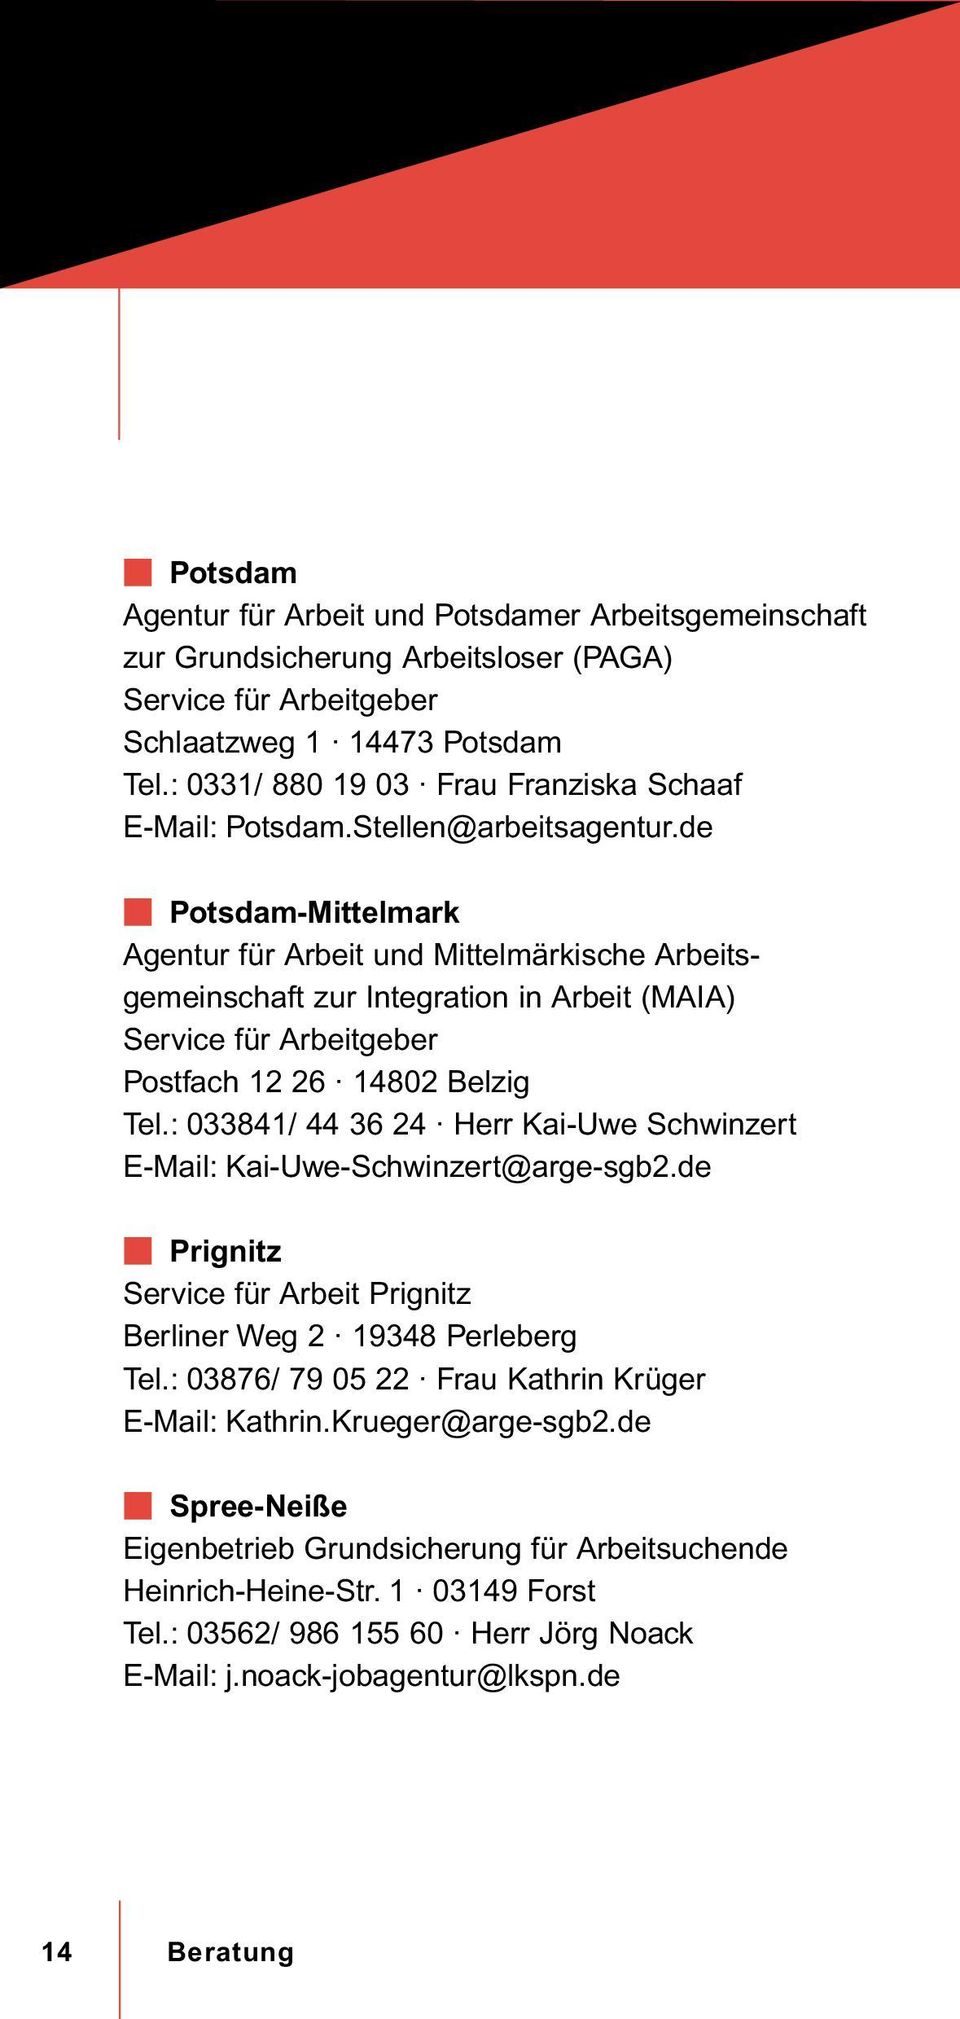 de W Potsdam-Mittelmark Agentur für Arbeit und Mittelmärkische Arbeitsgemeinschaft zur Integration in Arbeit (MAIA) Service für Arbeitgeber Postfach 12 26 14802 Belzig Tel.